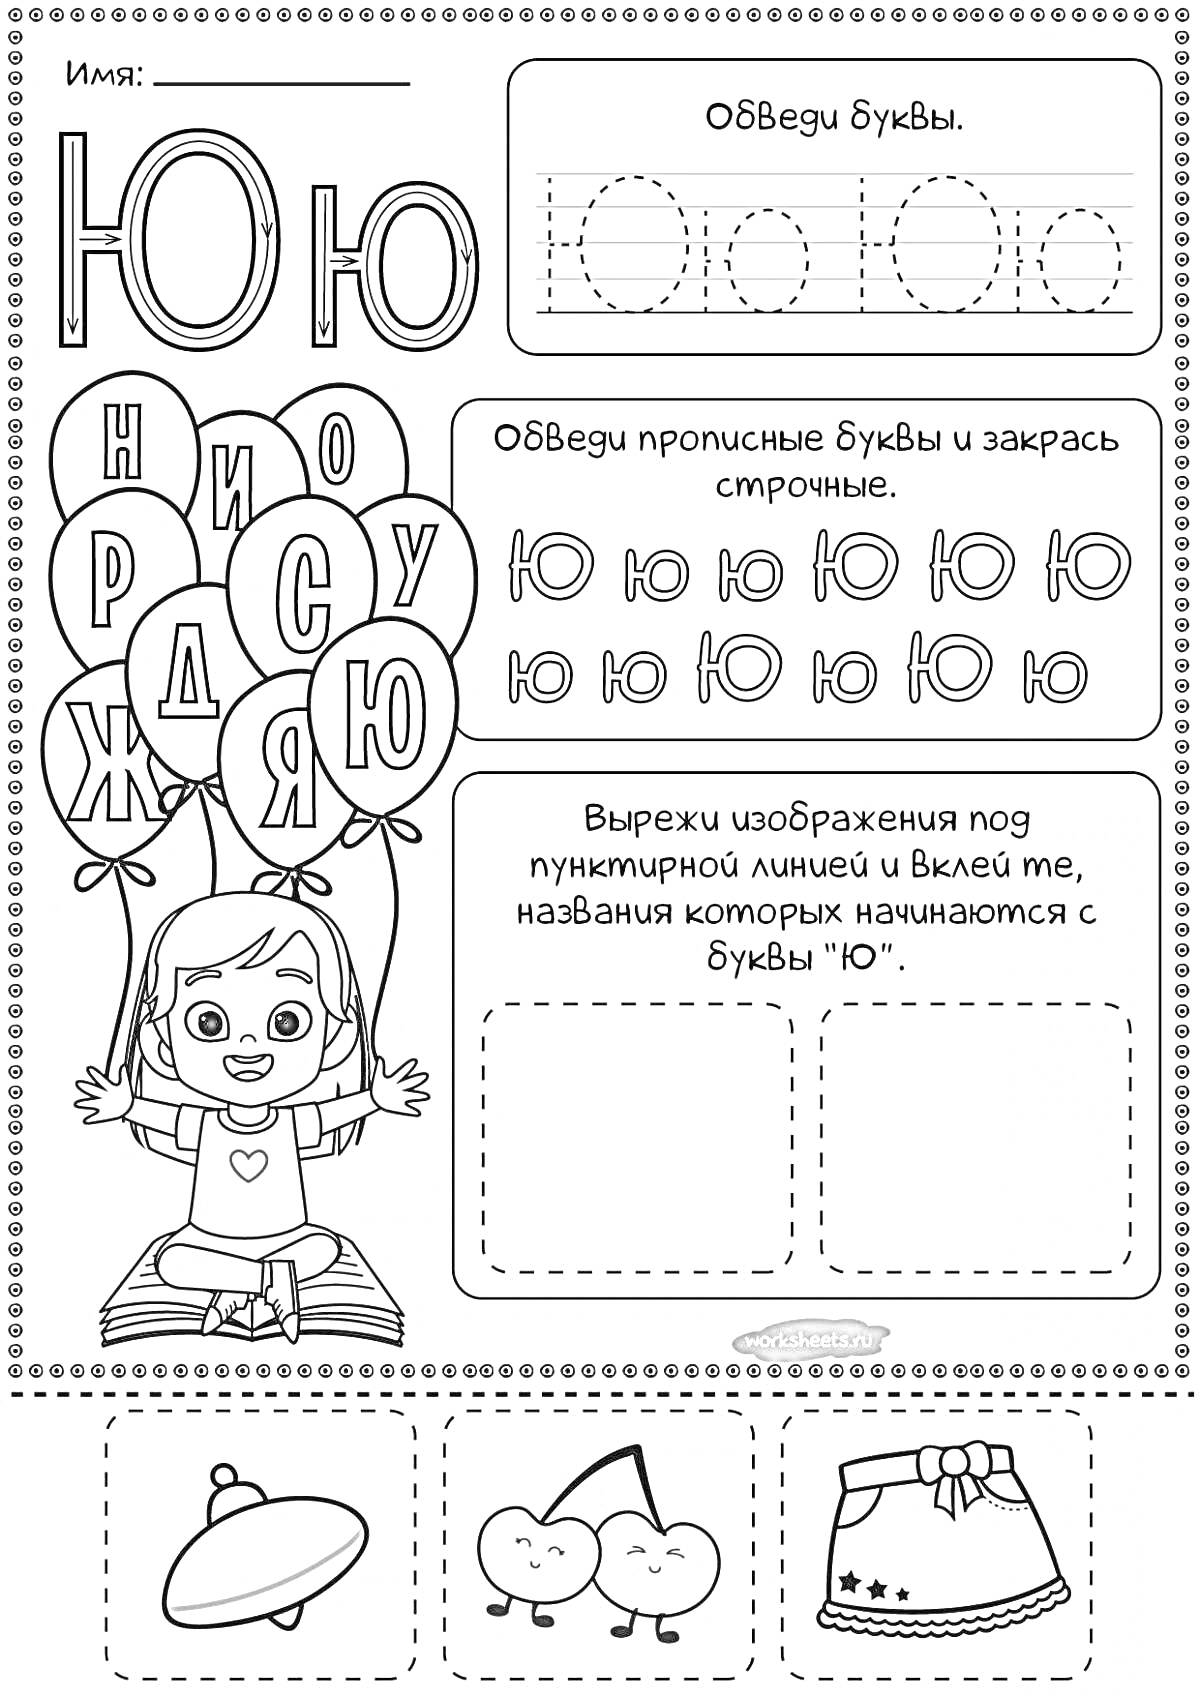 Раскраска Раскраска с буквой Ю для дошкольников, включает обведение буквы Ю, прописные буквы Ю, ребенок с шарами, вырезание и наклеивание изображений, начинающихся на букву Ю (юбка, юла, юг)